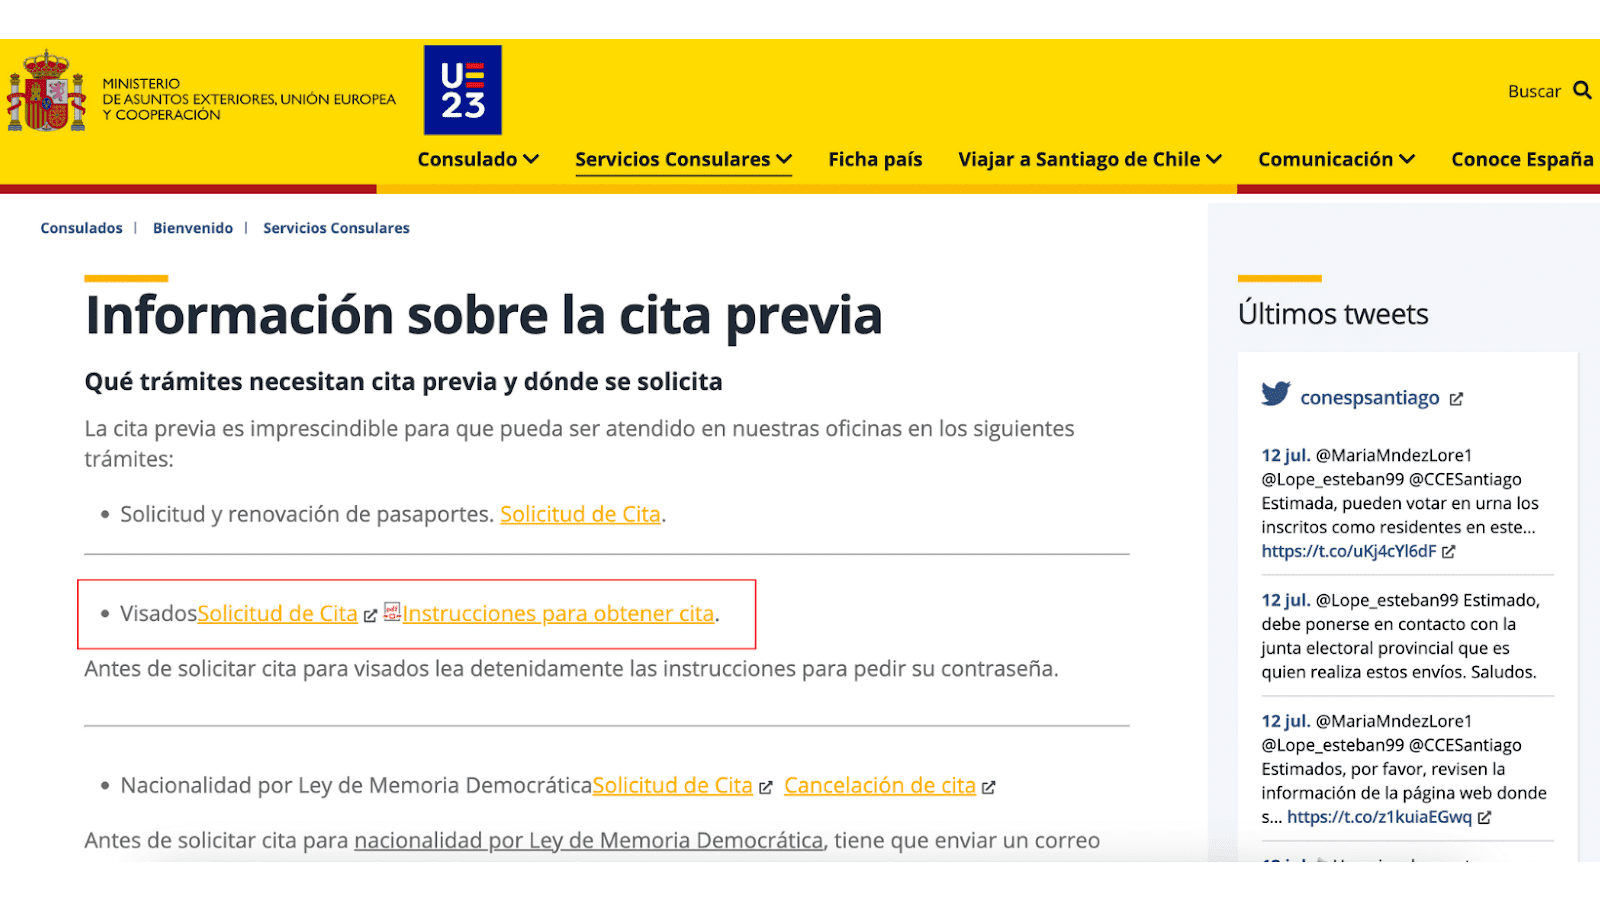 visa-nomada-digital-espana1